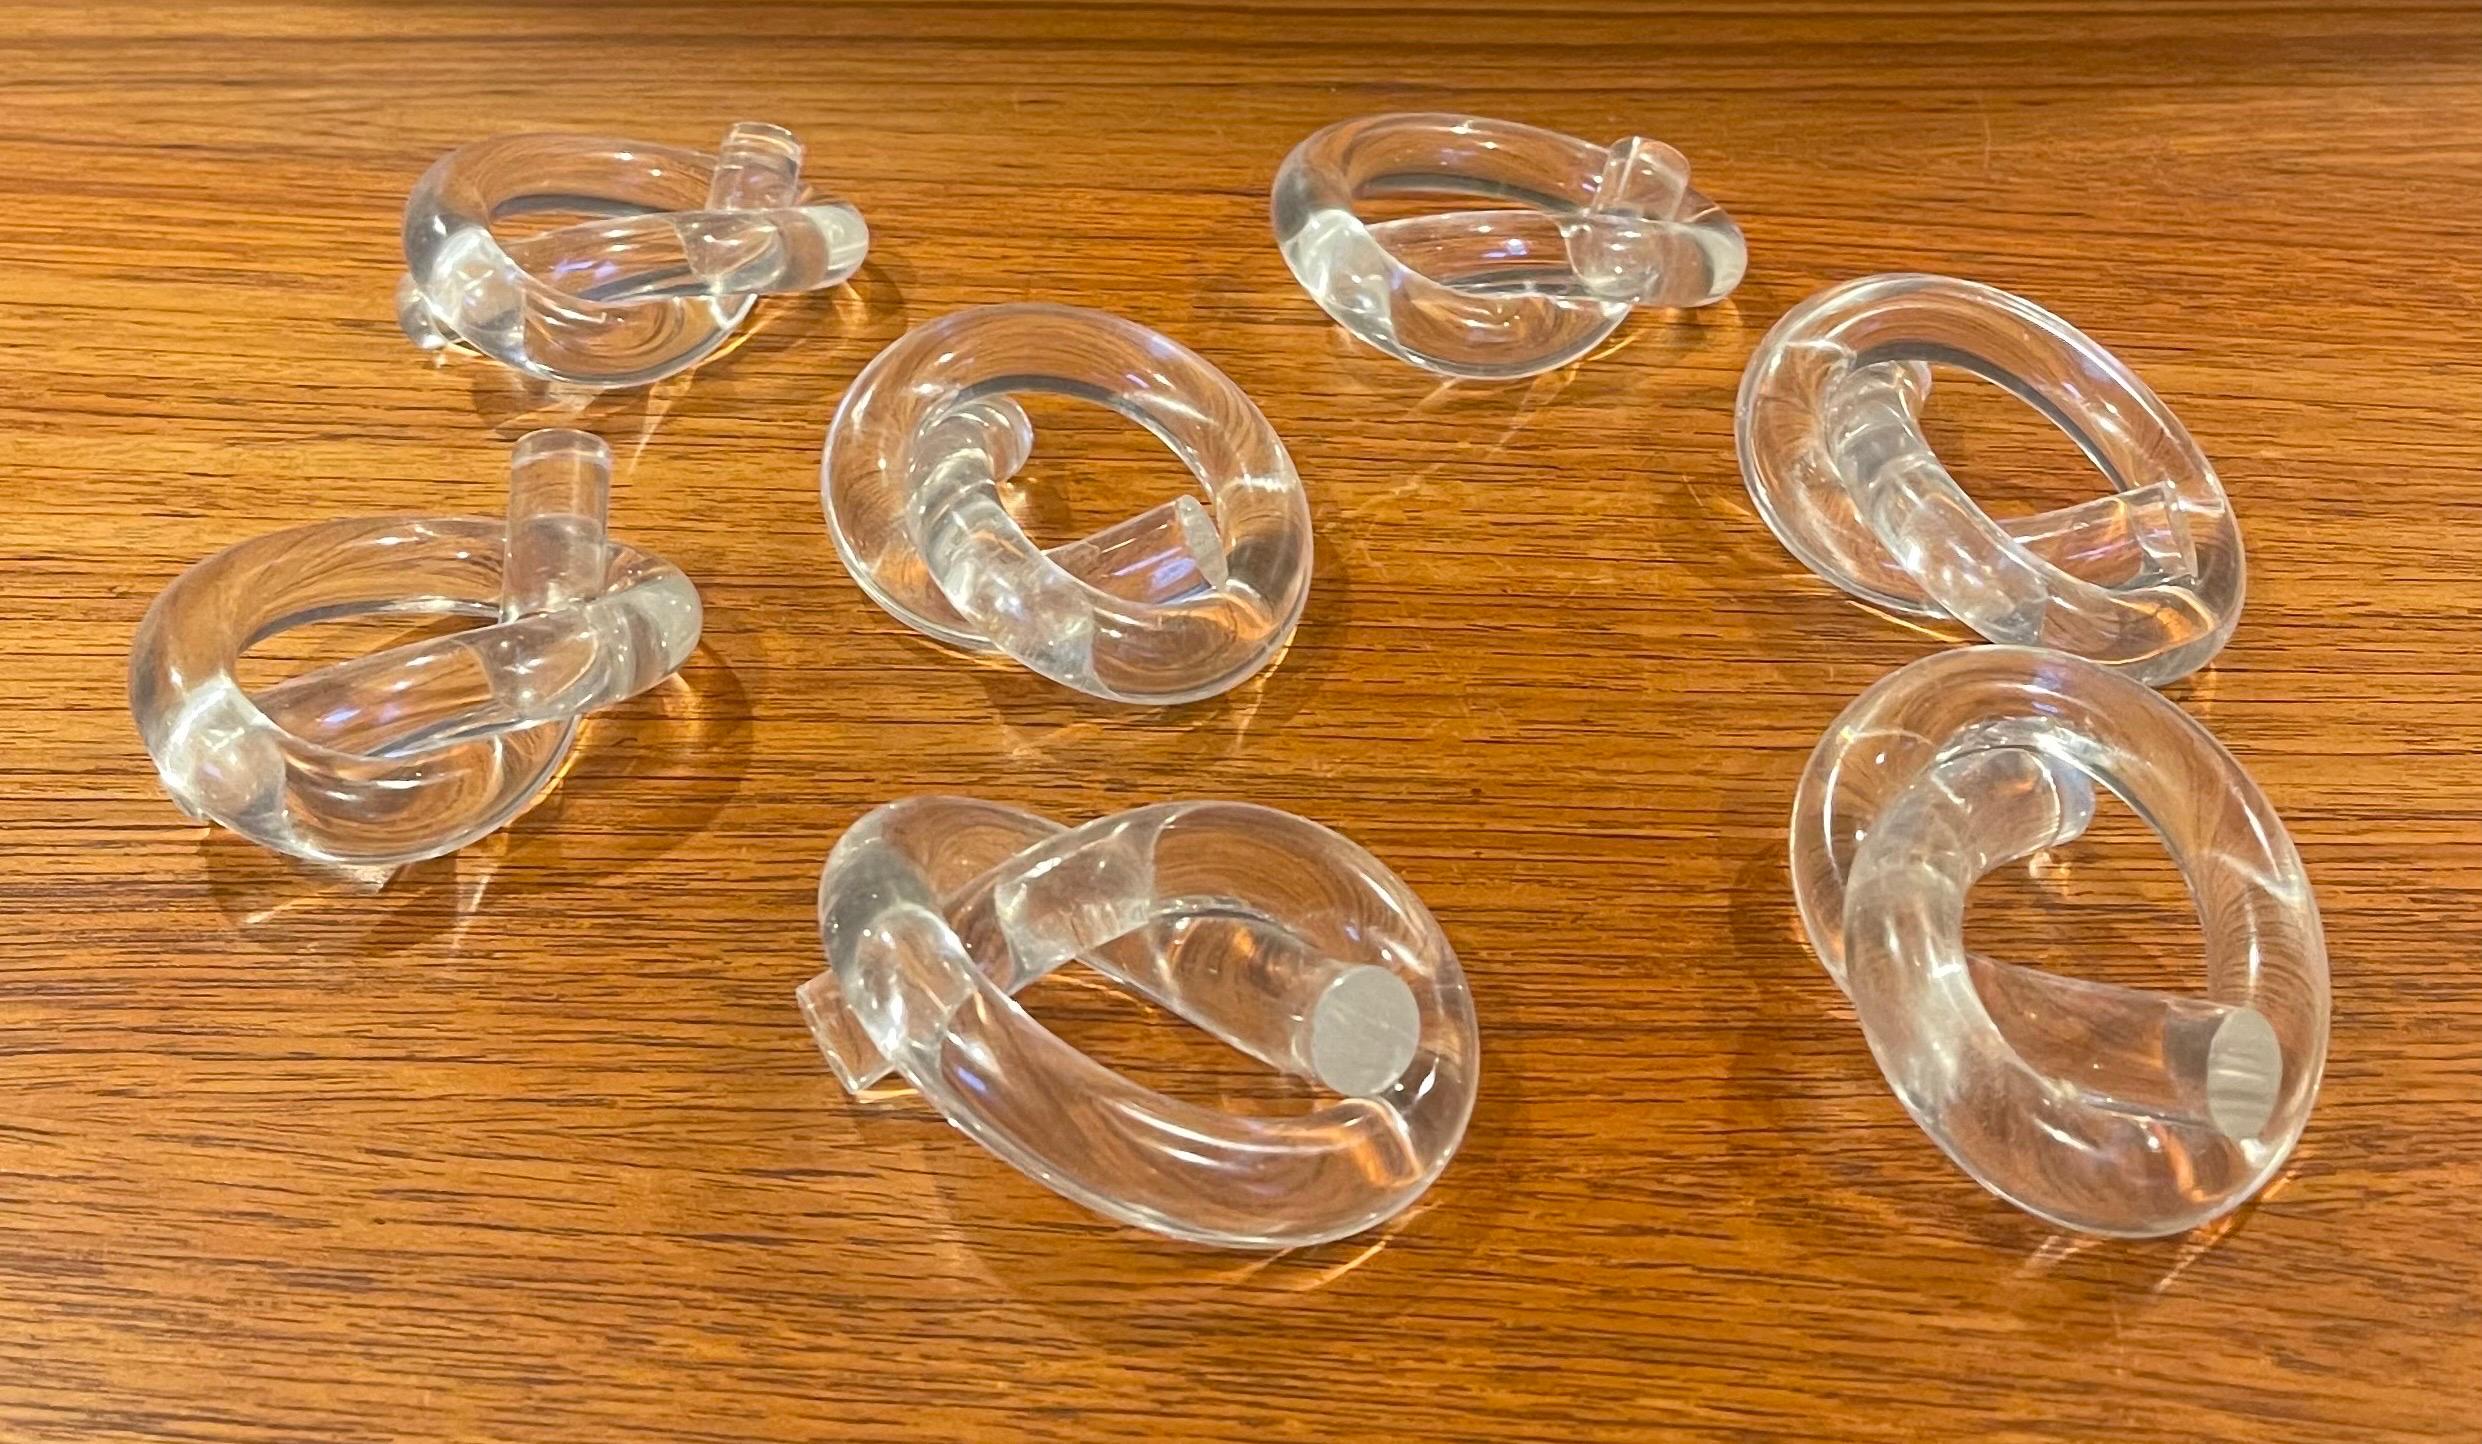 Ensemble de sept ronds de serviette MCM en lucite en forme de bretzel, par Dorothy Thorpe, vers les années 1980. Les anneaux ont un design circulaire oblong et mesurent 3